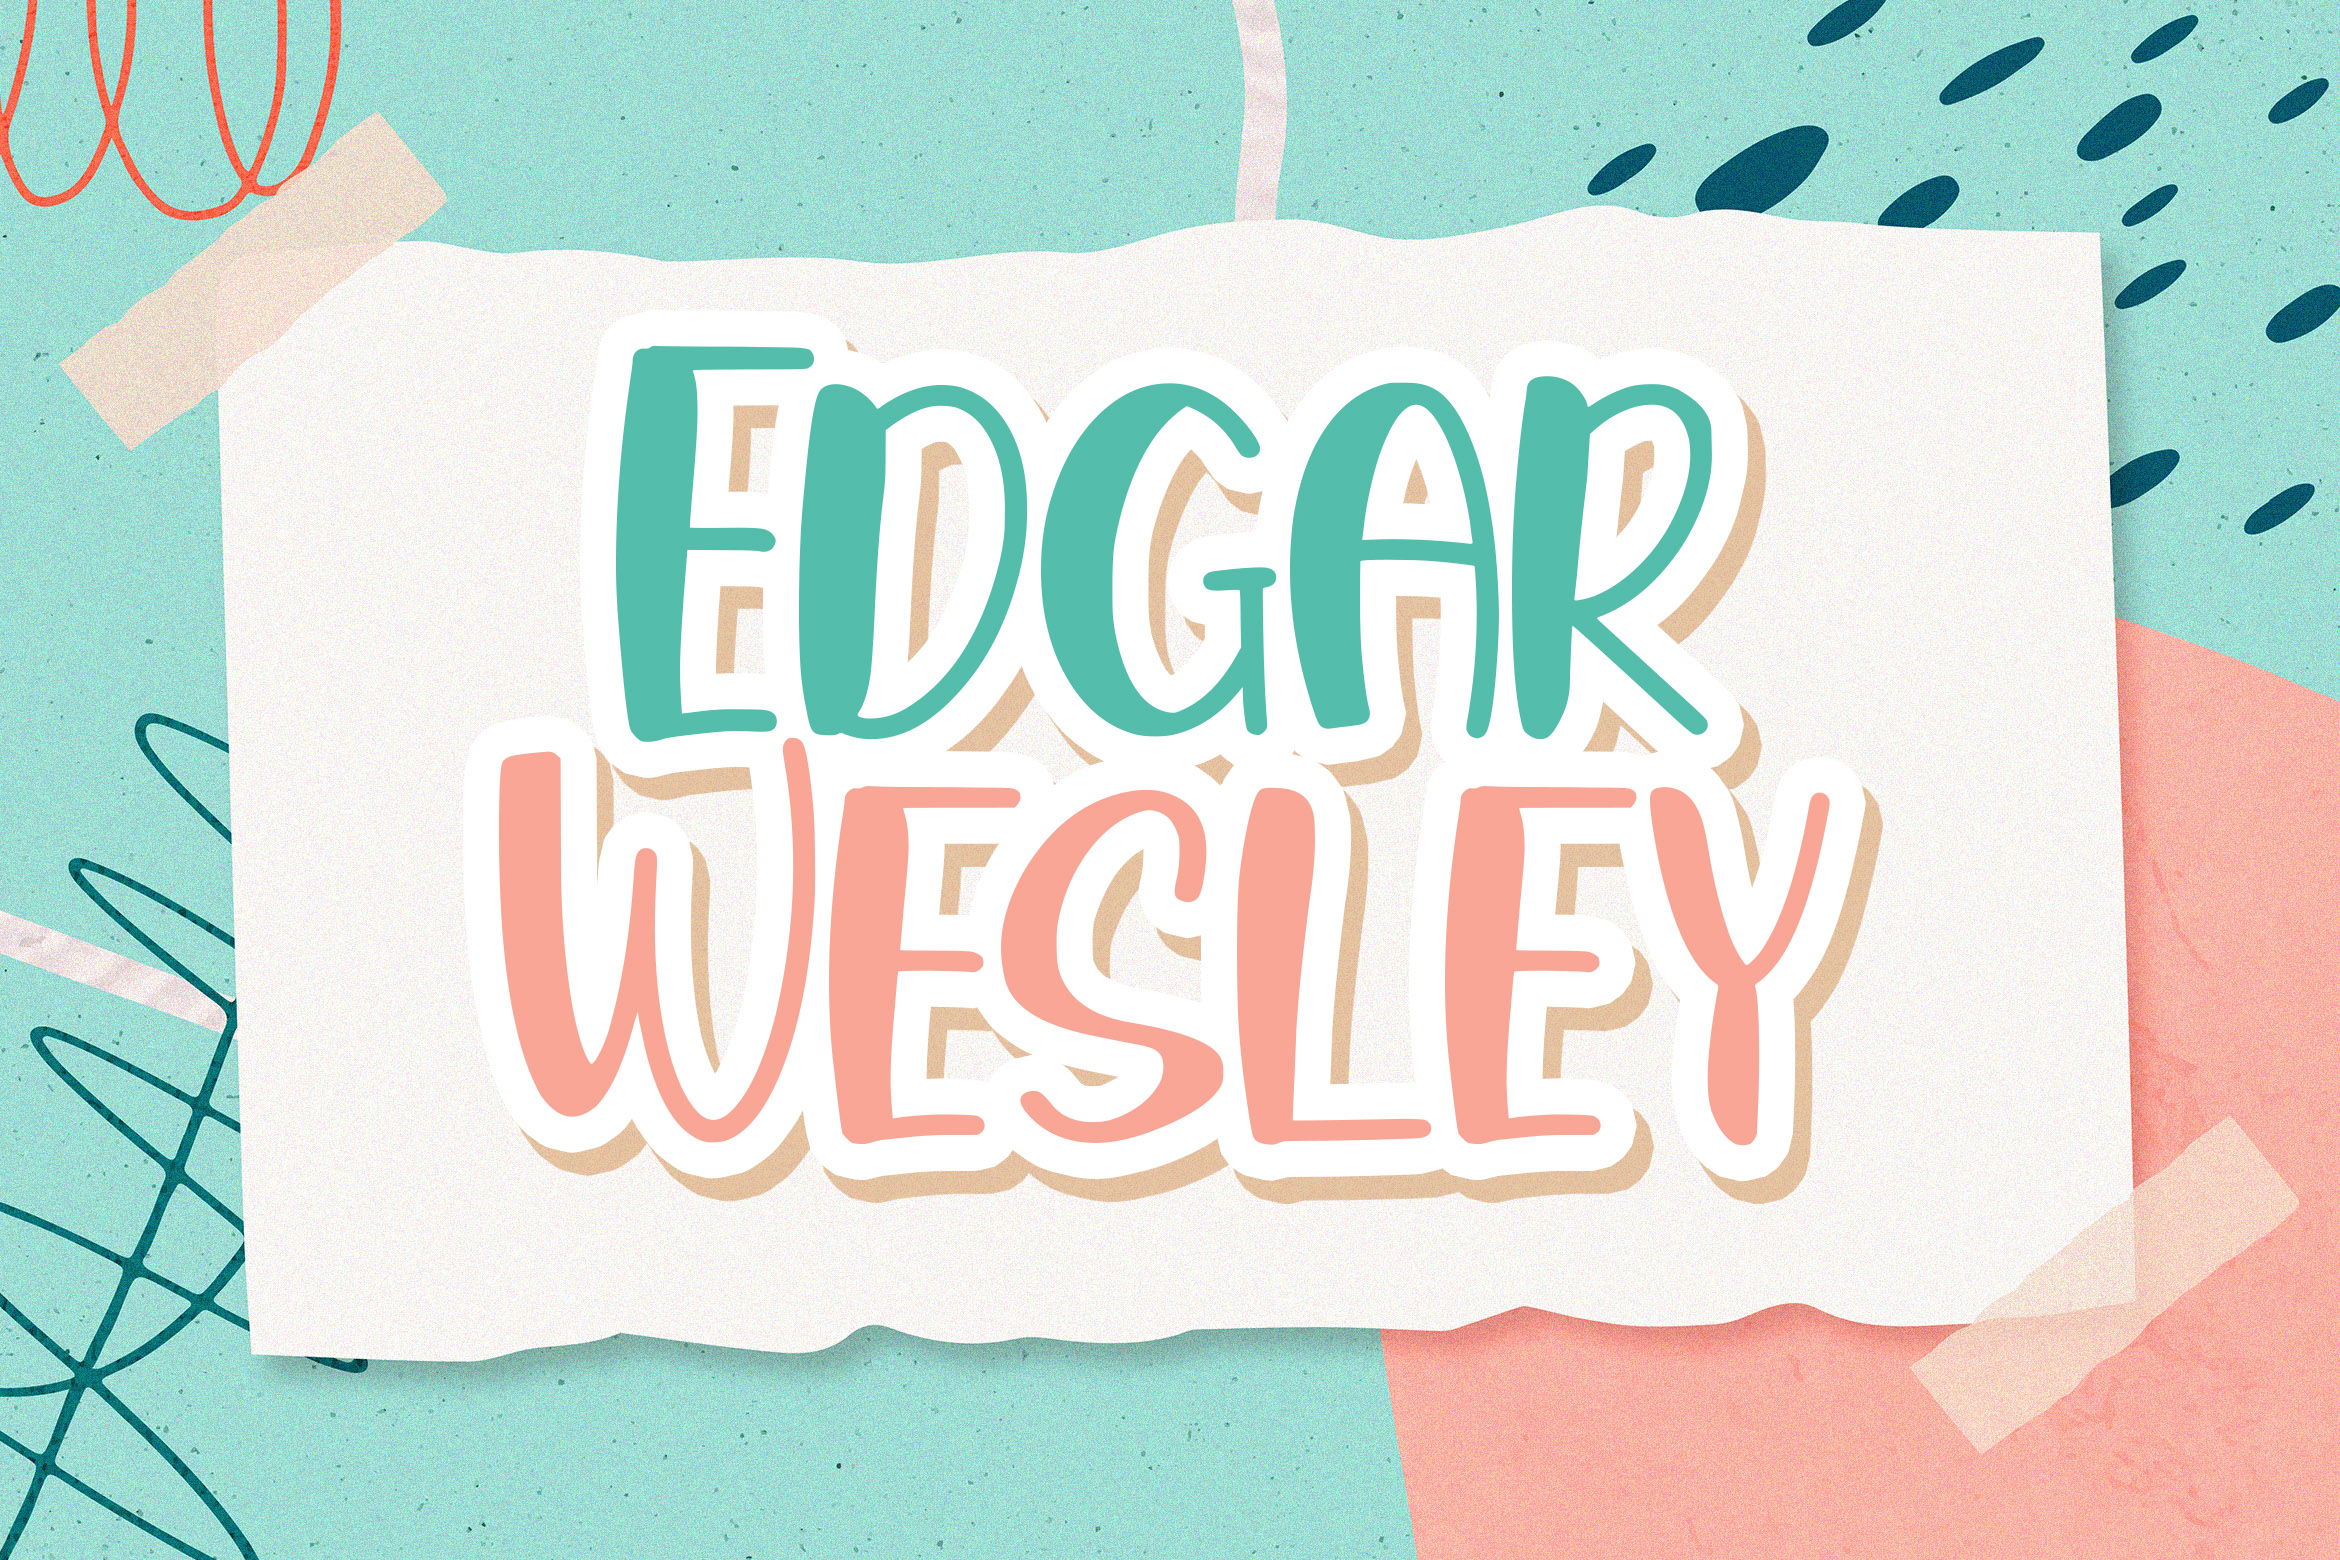 Edgar Wesley